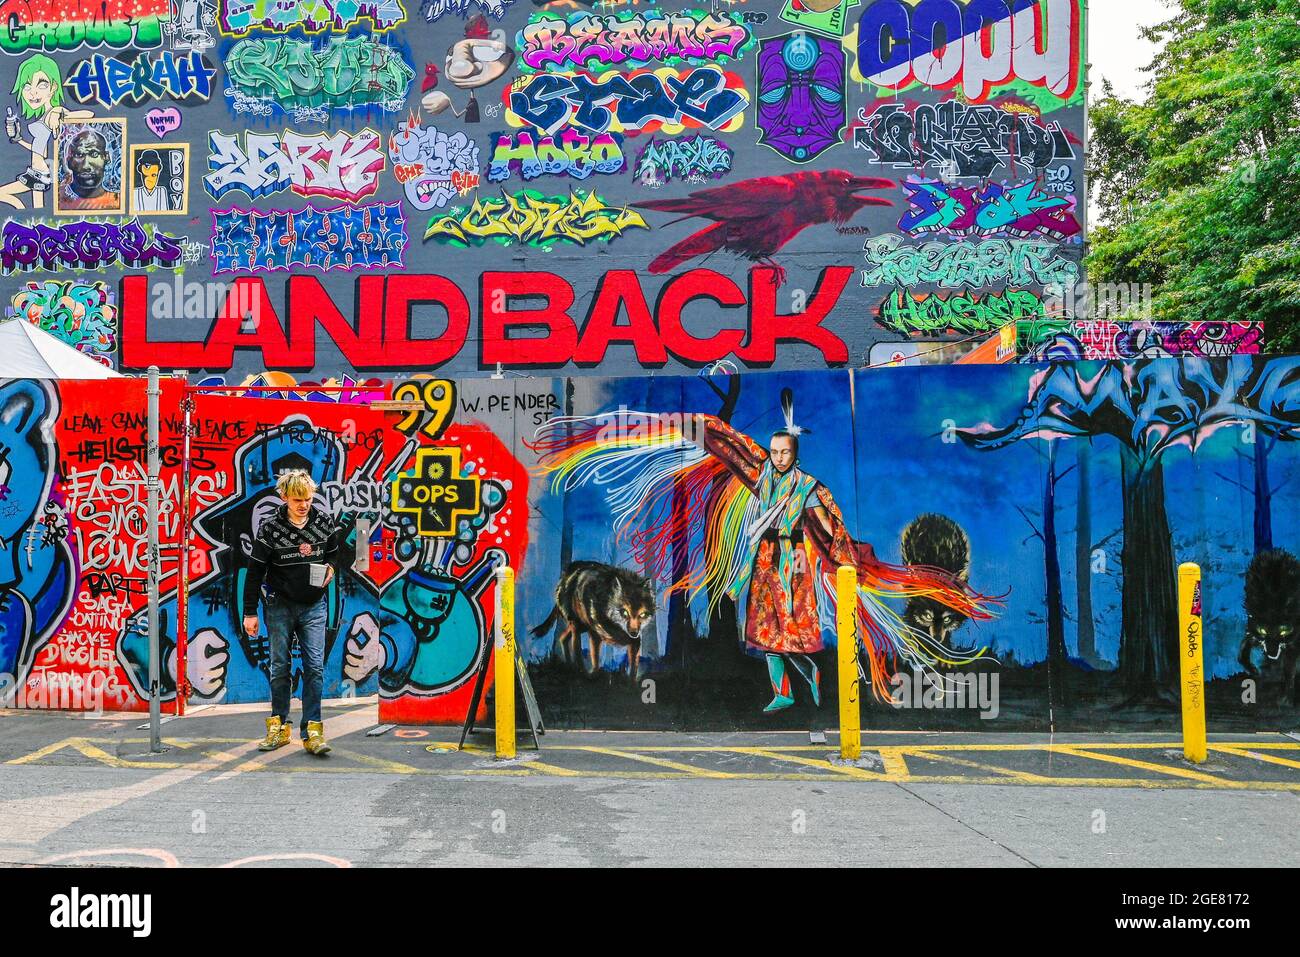 Graffiti sur le site de prévention des surdoses, Abbott et West Pender, Vancouver (Colombie-Britannique), Canada Banque D'Images